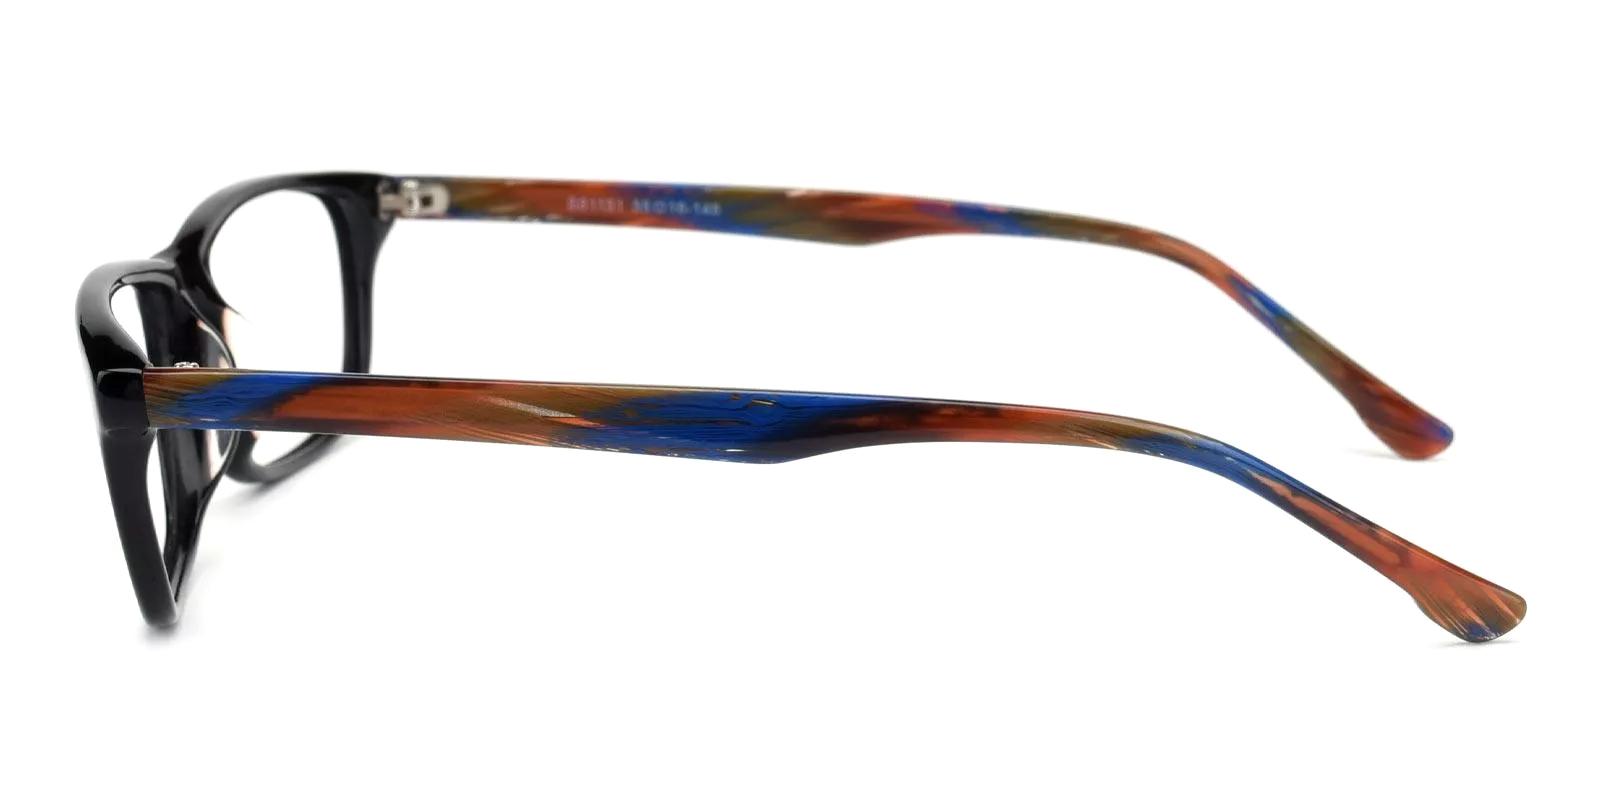 Felin Black Acetate Eyeglasses , UniversalBridgeFit Frames from ABBE Glasses